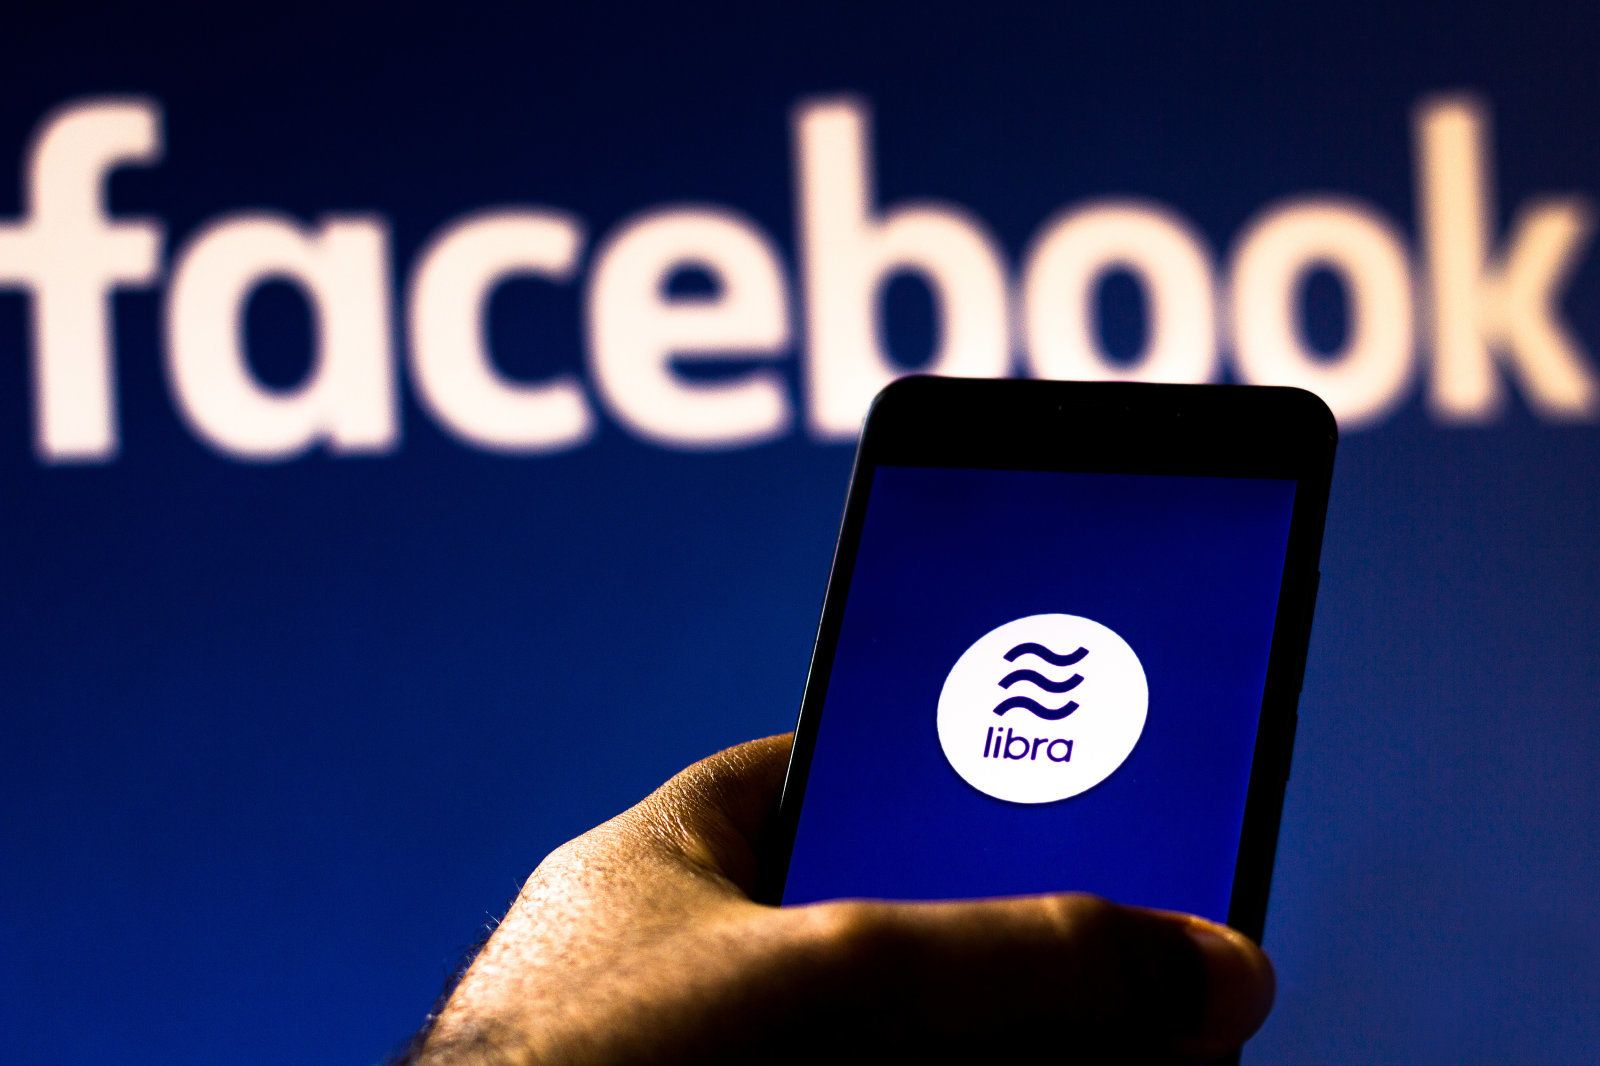 ไร้เงินหยวน…? | Facebook ประกาศสัดส่วนตะกร้าเงิน Libra ใช้ดอลลาร์สูงถึง 50%